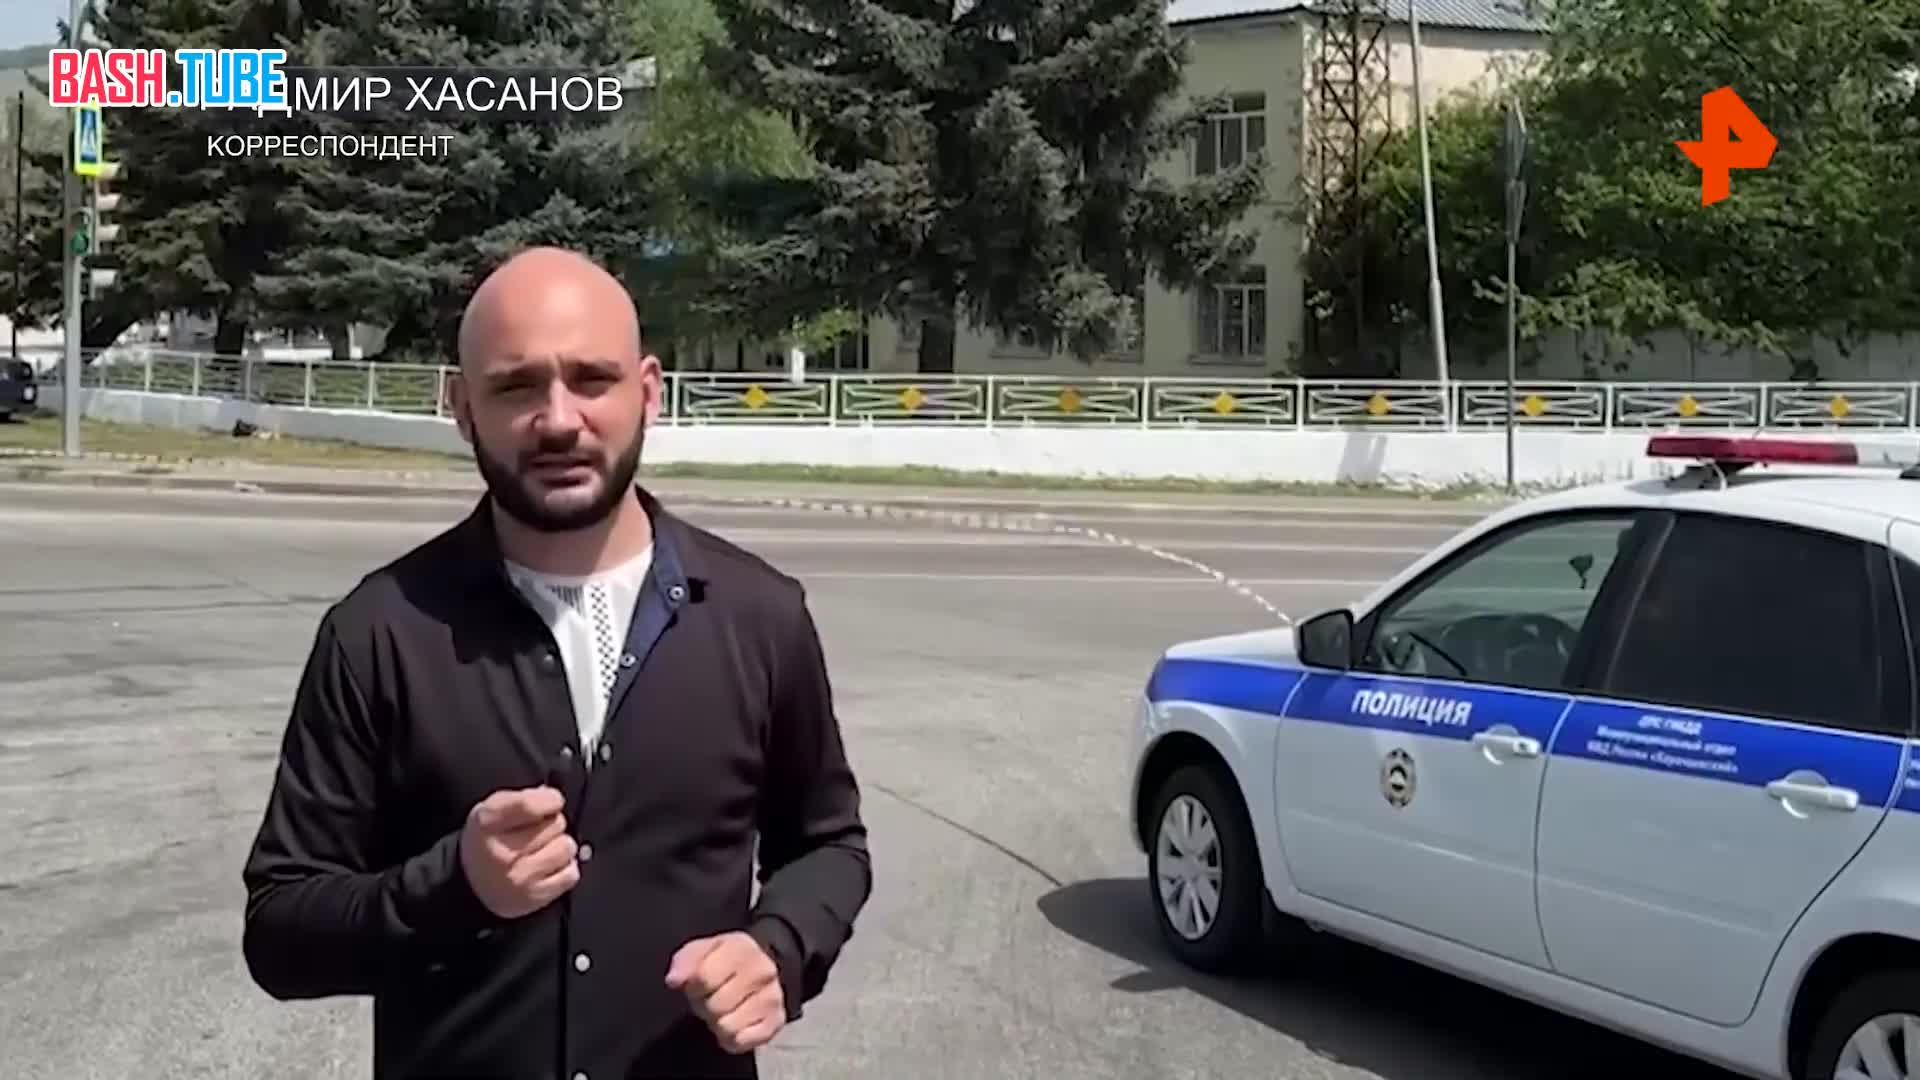  Корреспондент показал место преступления в Карачаево-Черкесии